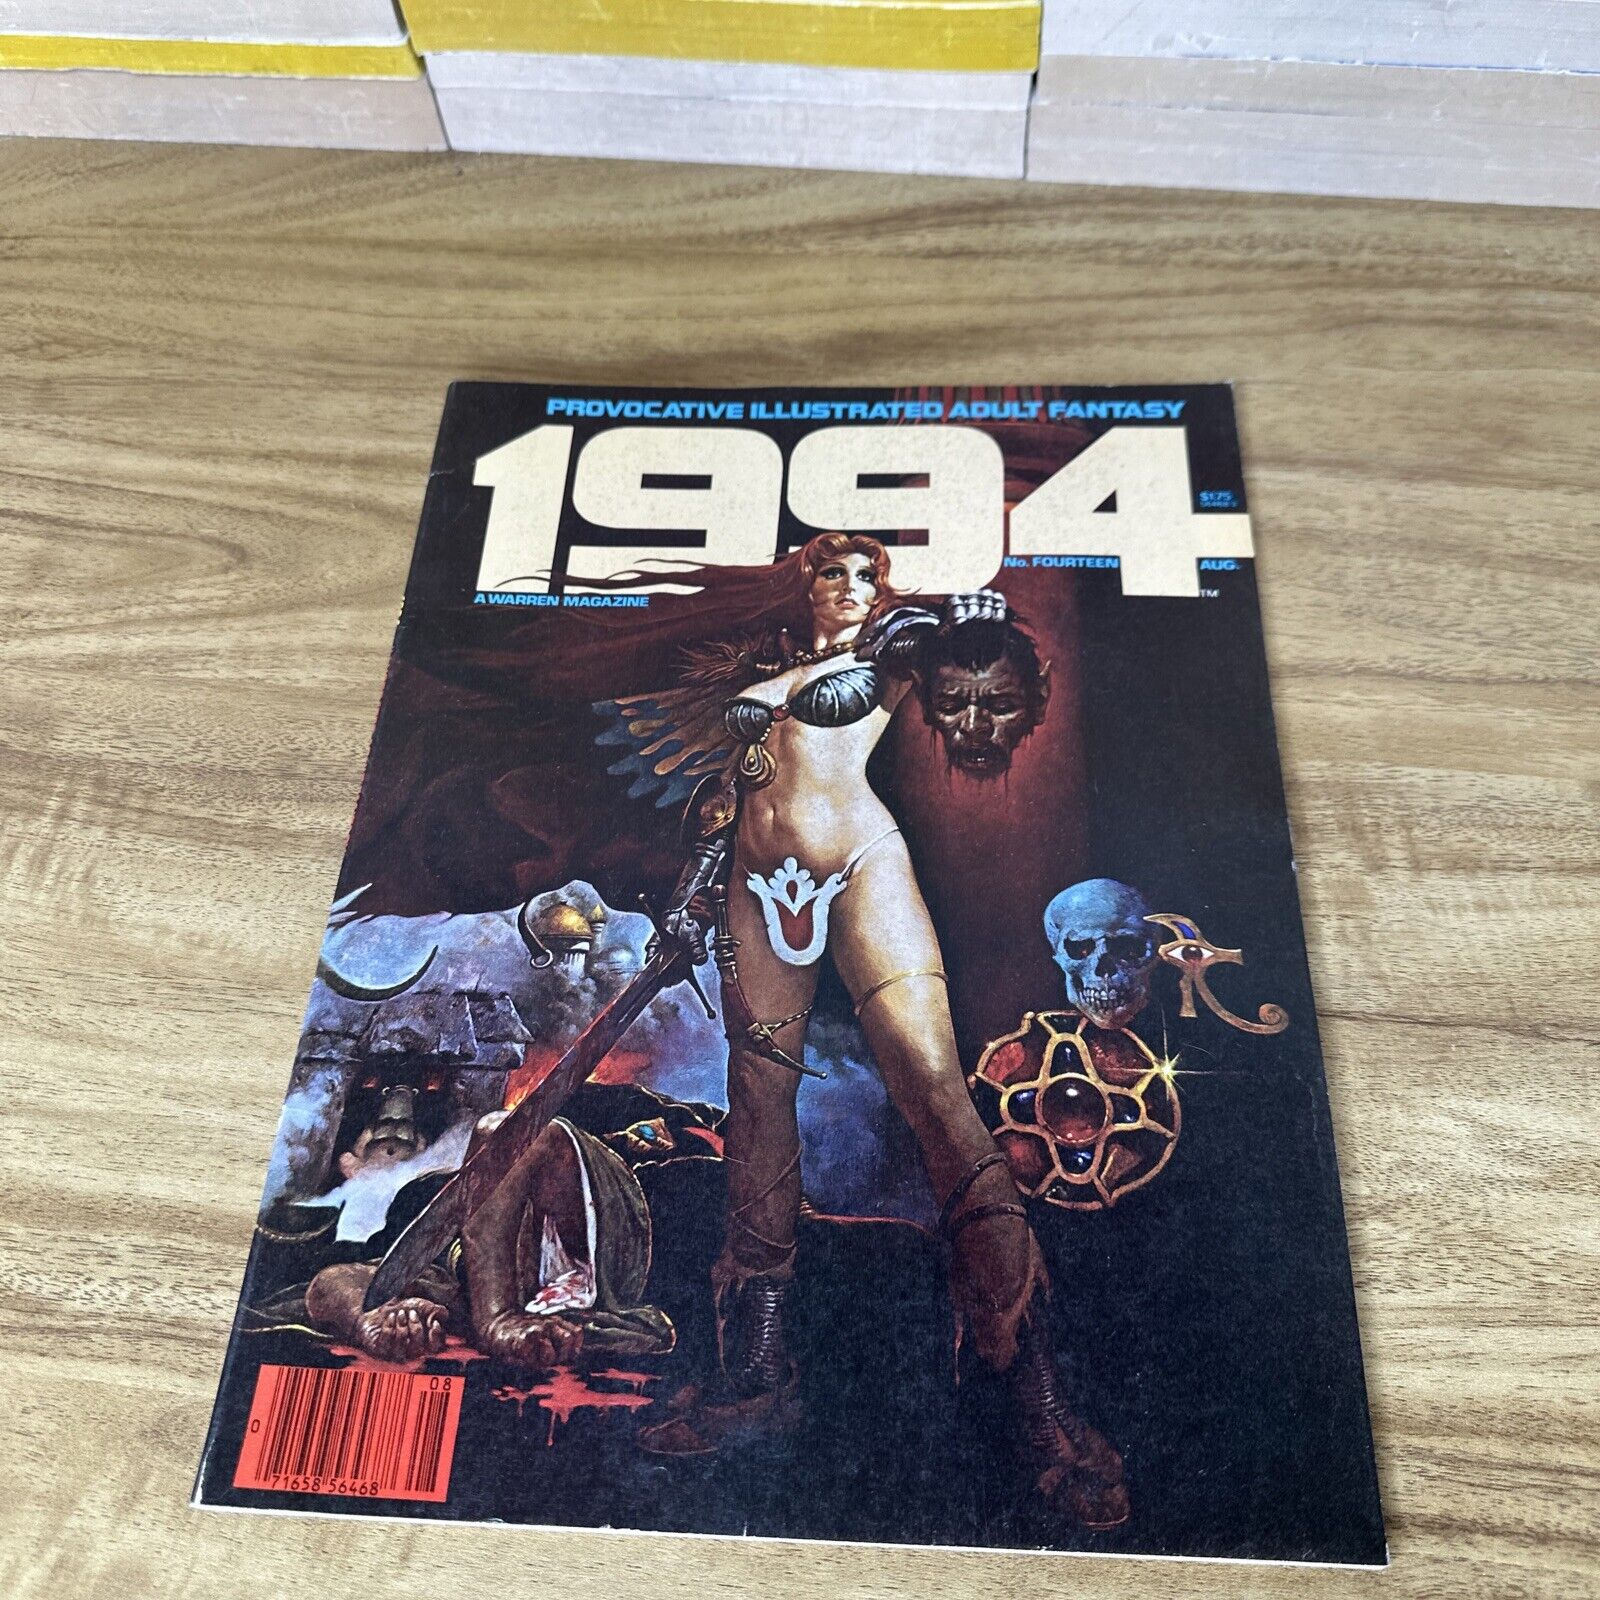 1994 Magazine #14 Warren Magazine Vintage Adult Fantasy